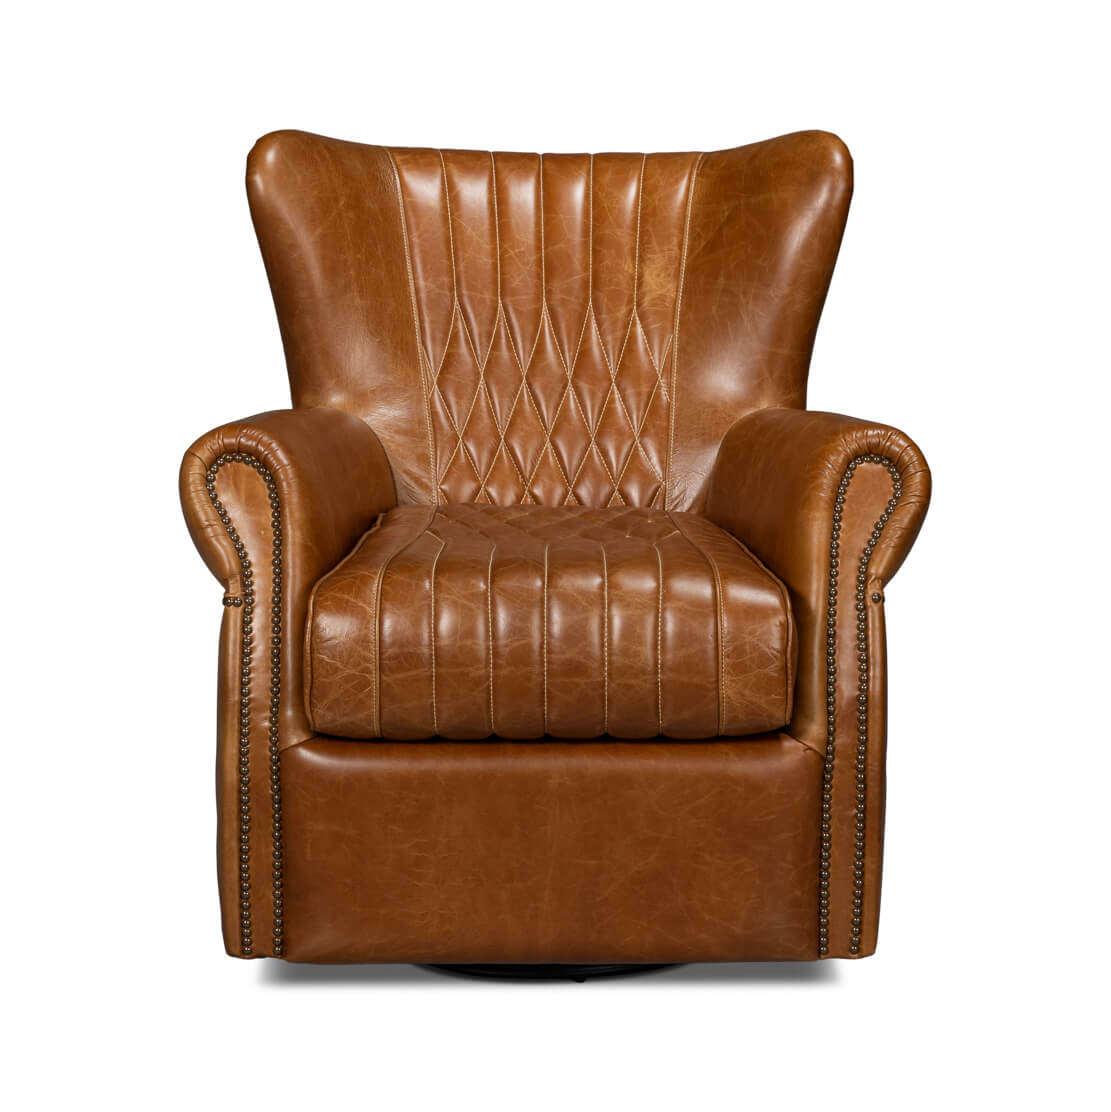 Classic Brown Leather Swivel Chair - English Georgian America